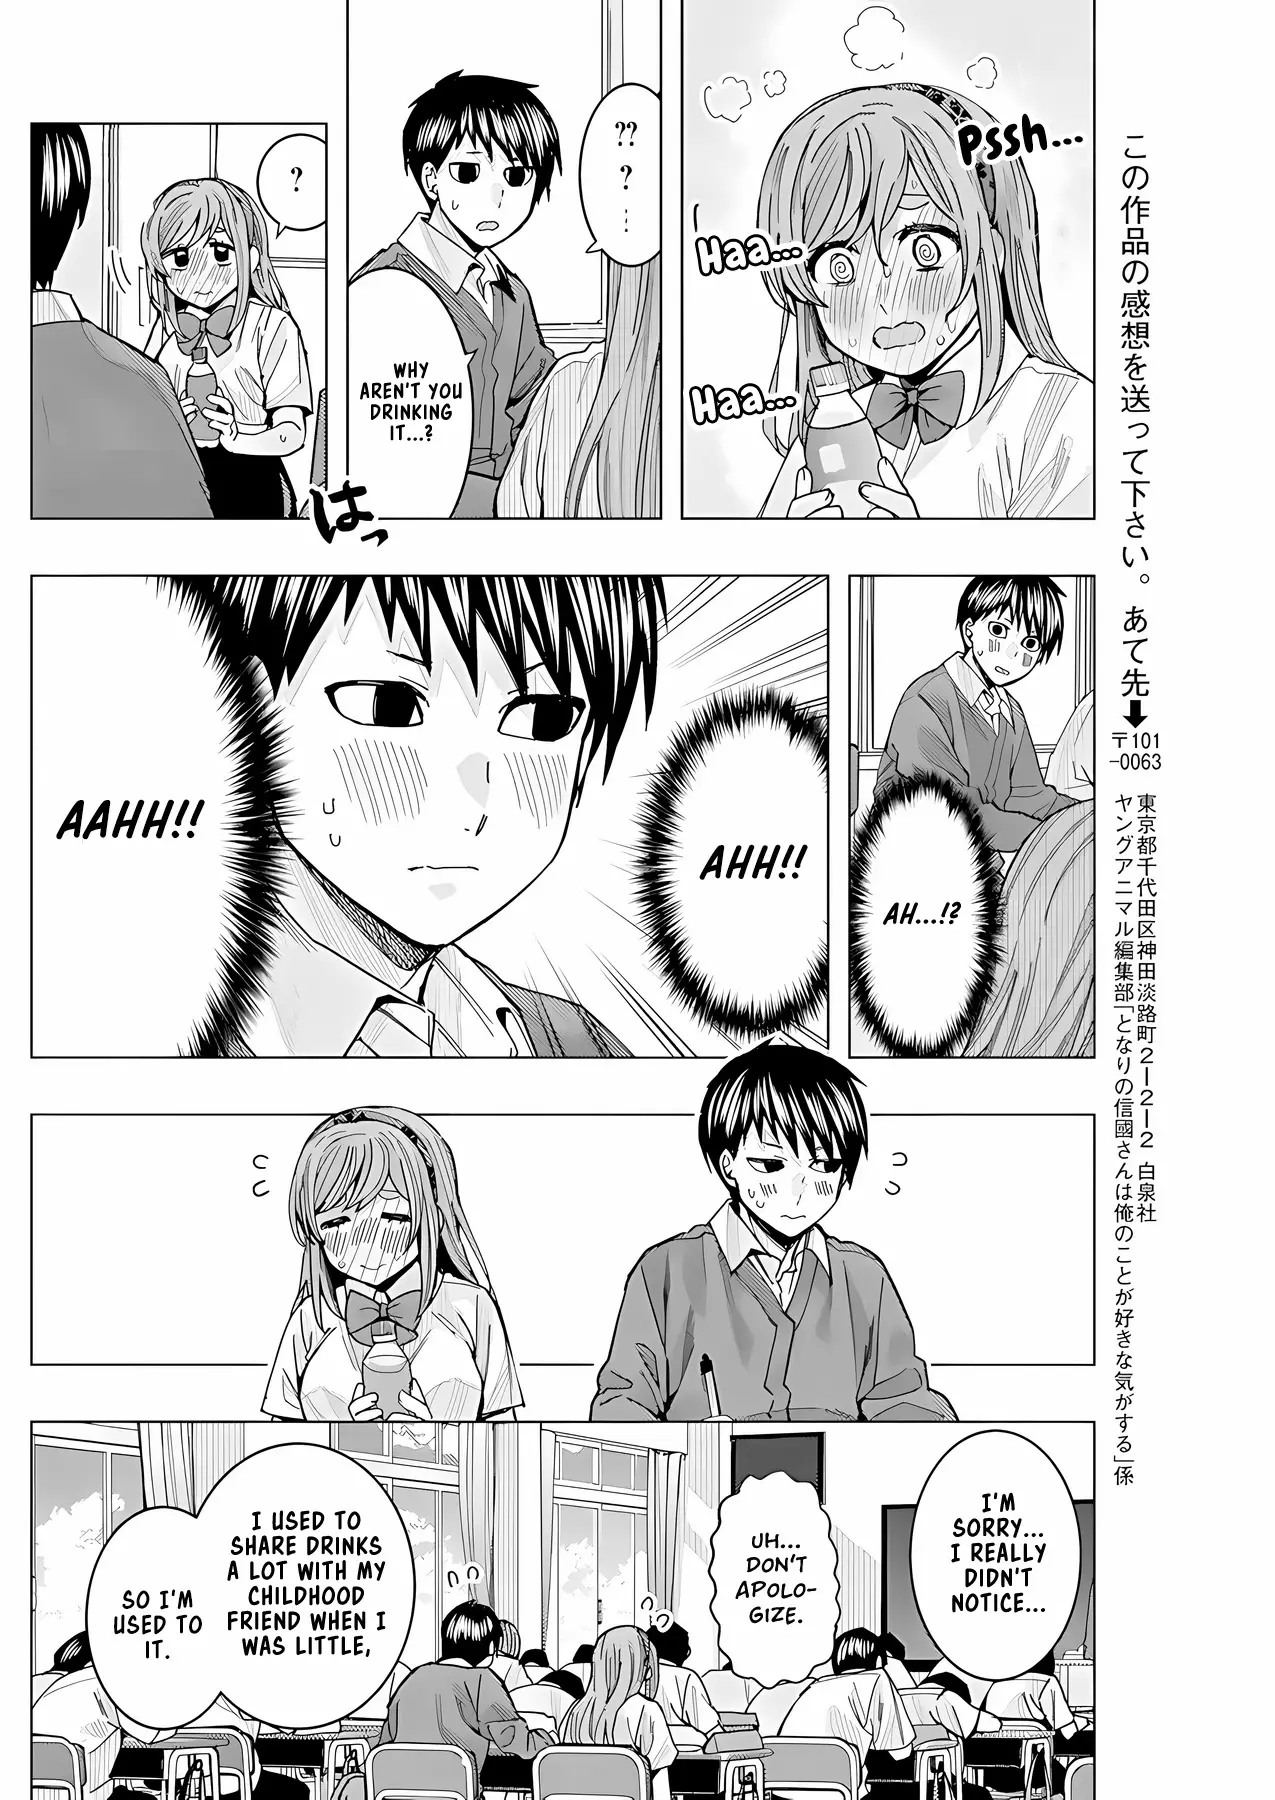 "nobukuni-San" Does She Like Me? - 26 page 11-45160c1a